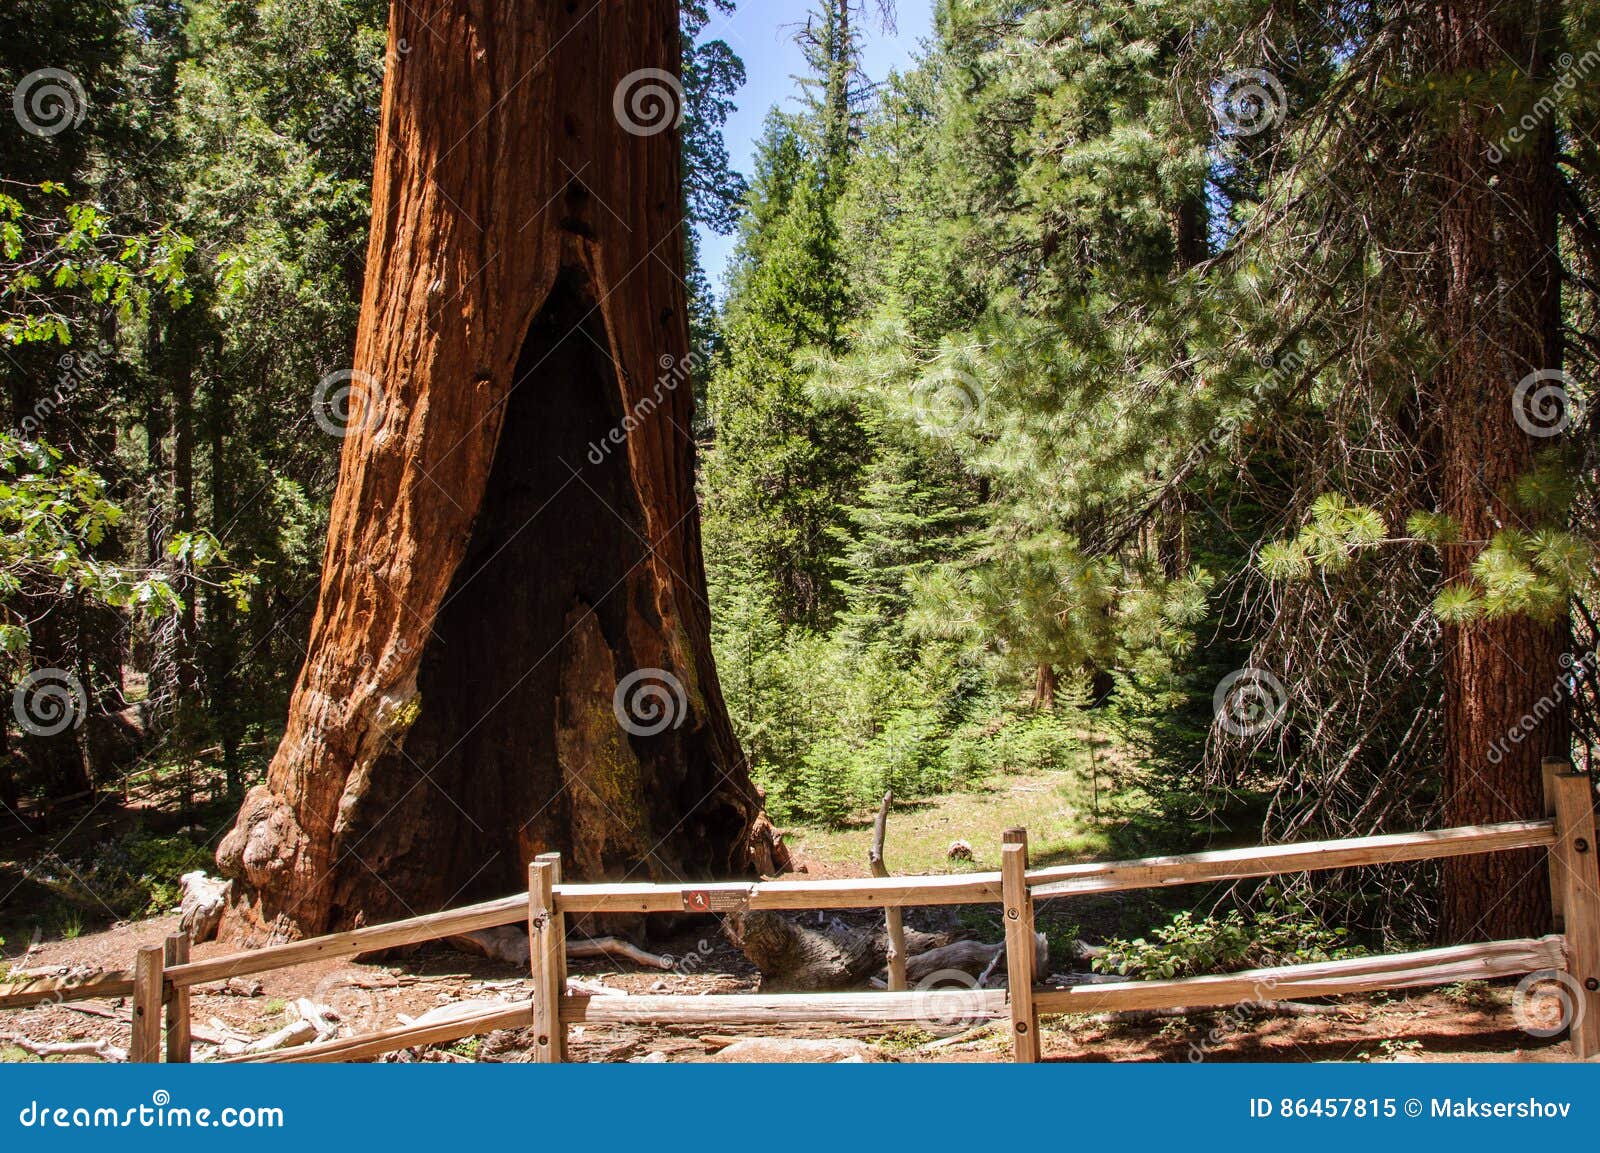 自然治愈 / 漫步于加州红杉国家公园_哔哩哔哩_bilibili